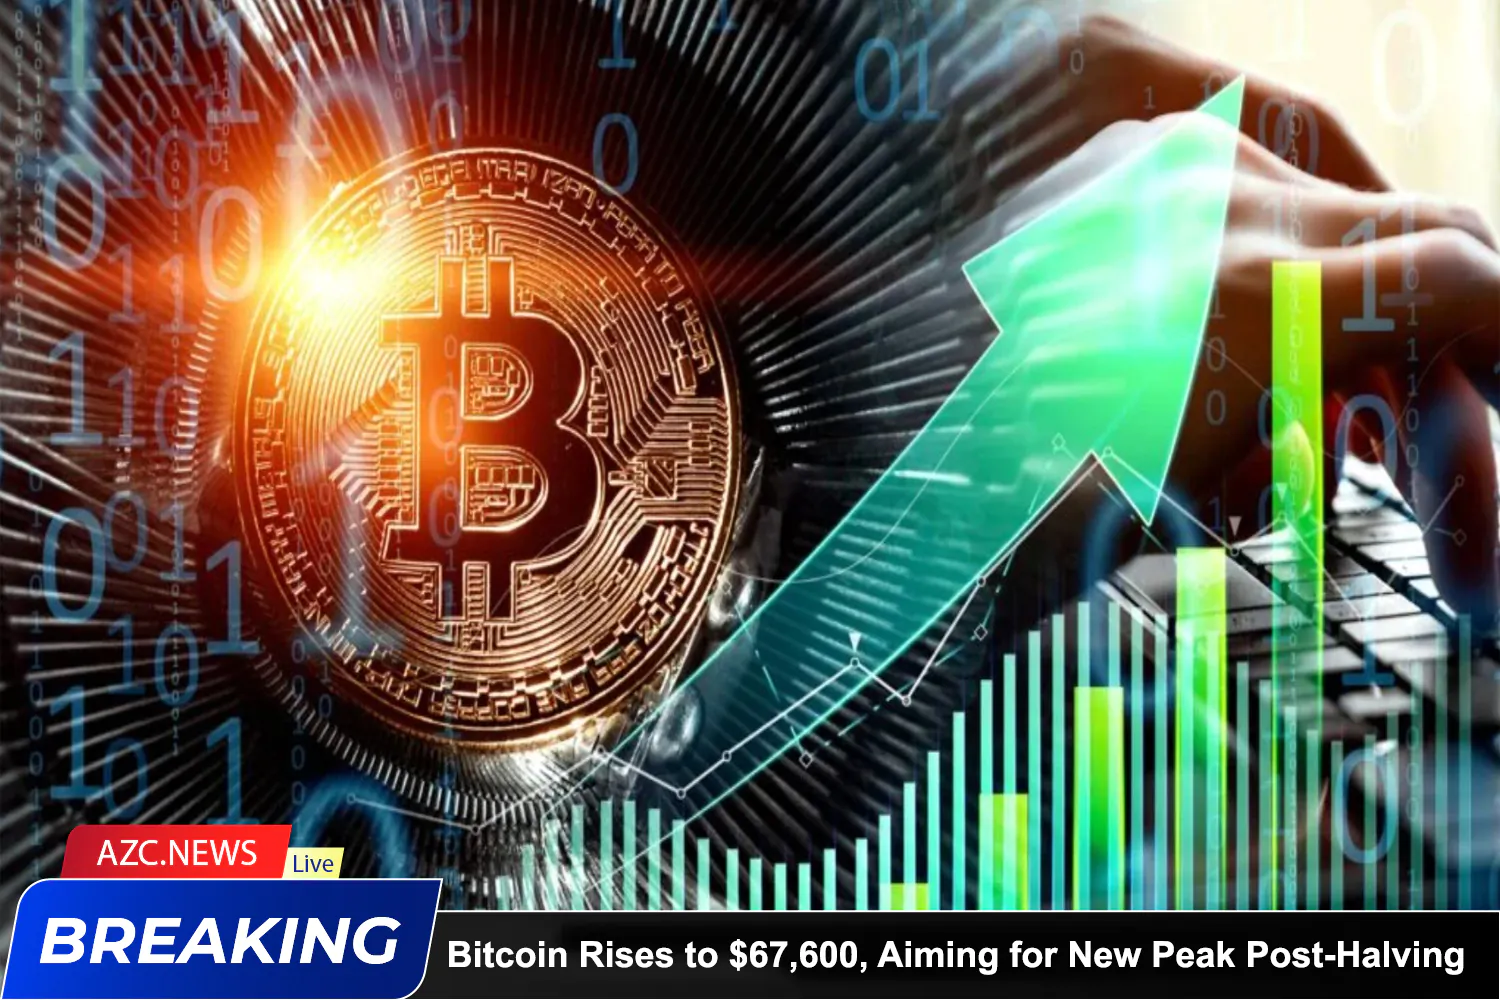 Azcnews Breaking Bitcoin New Peak Halving